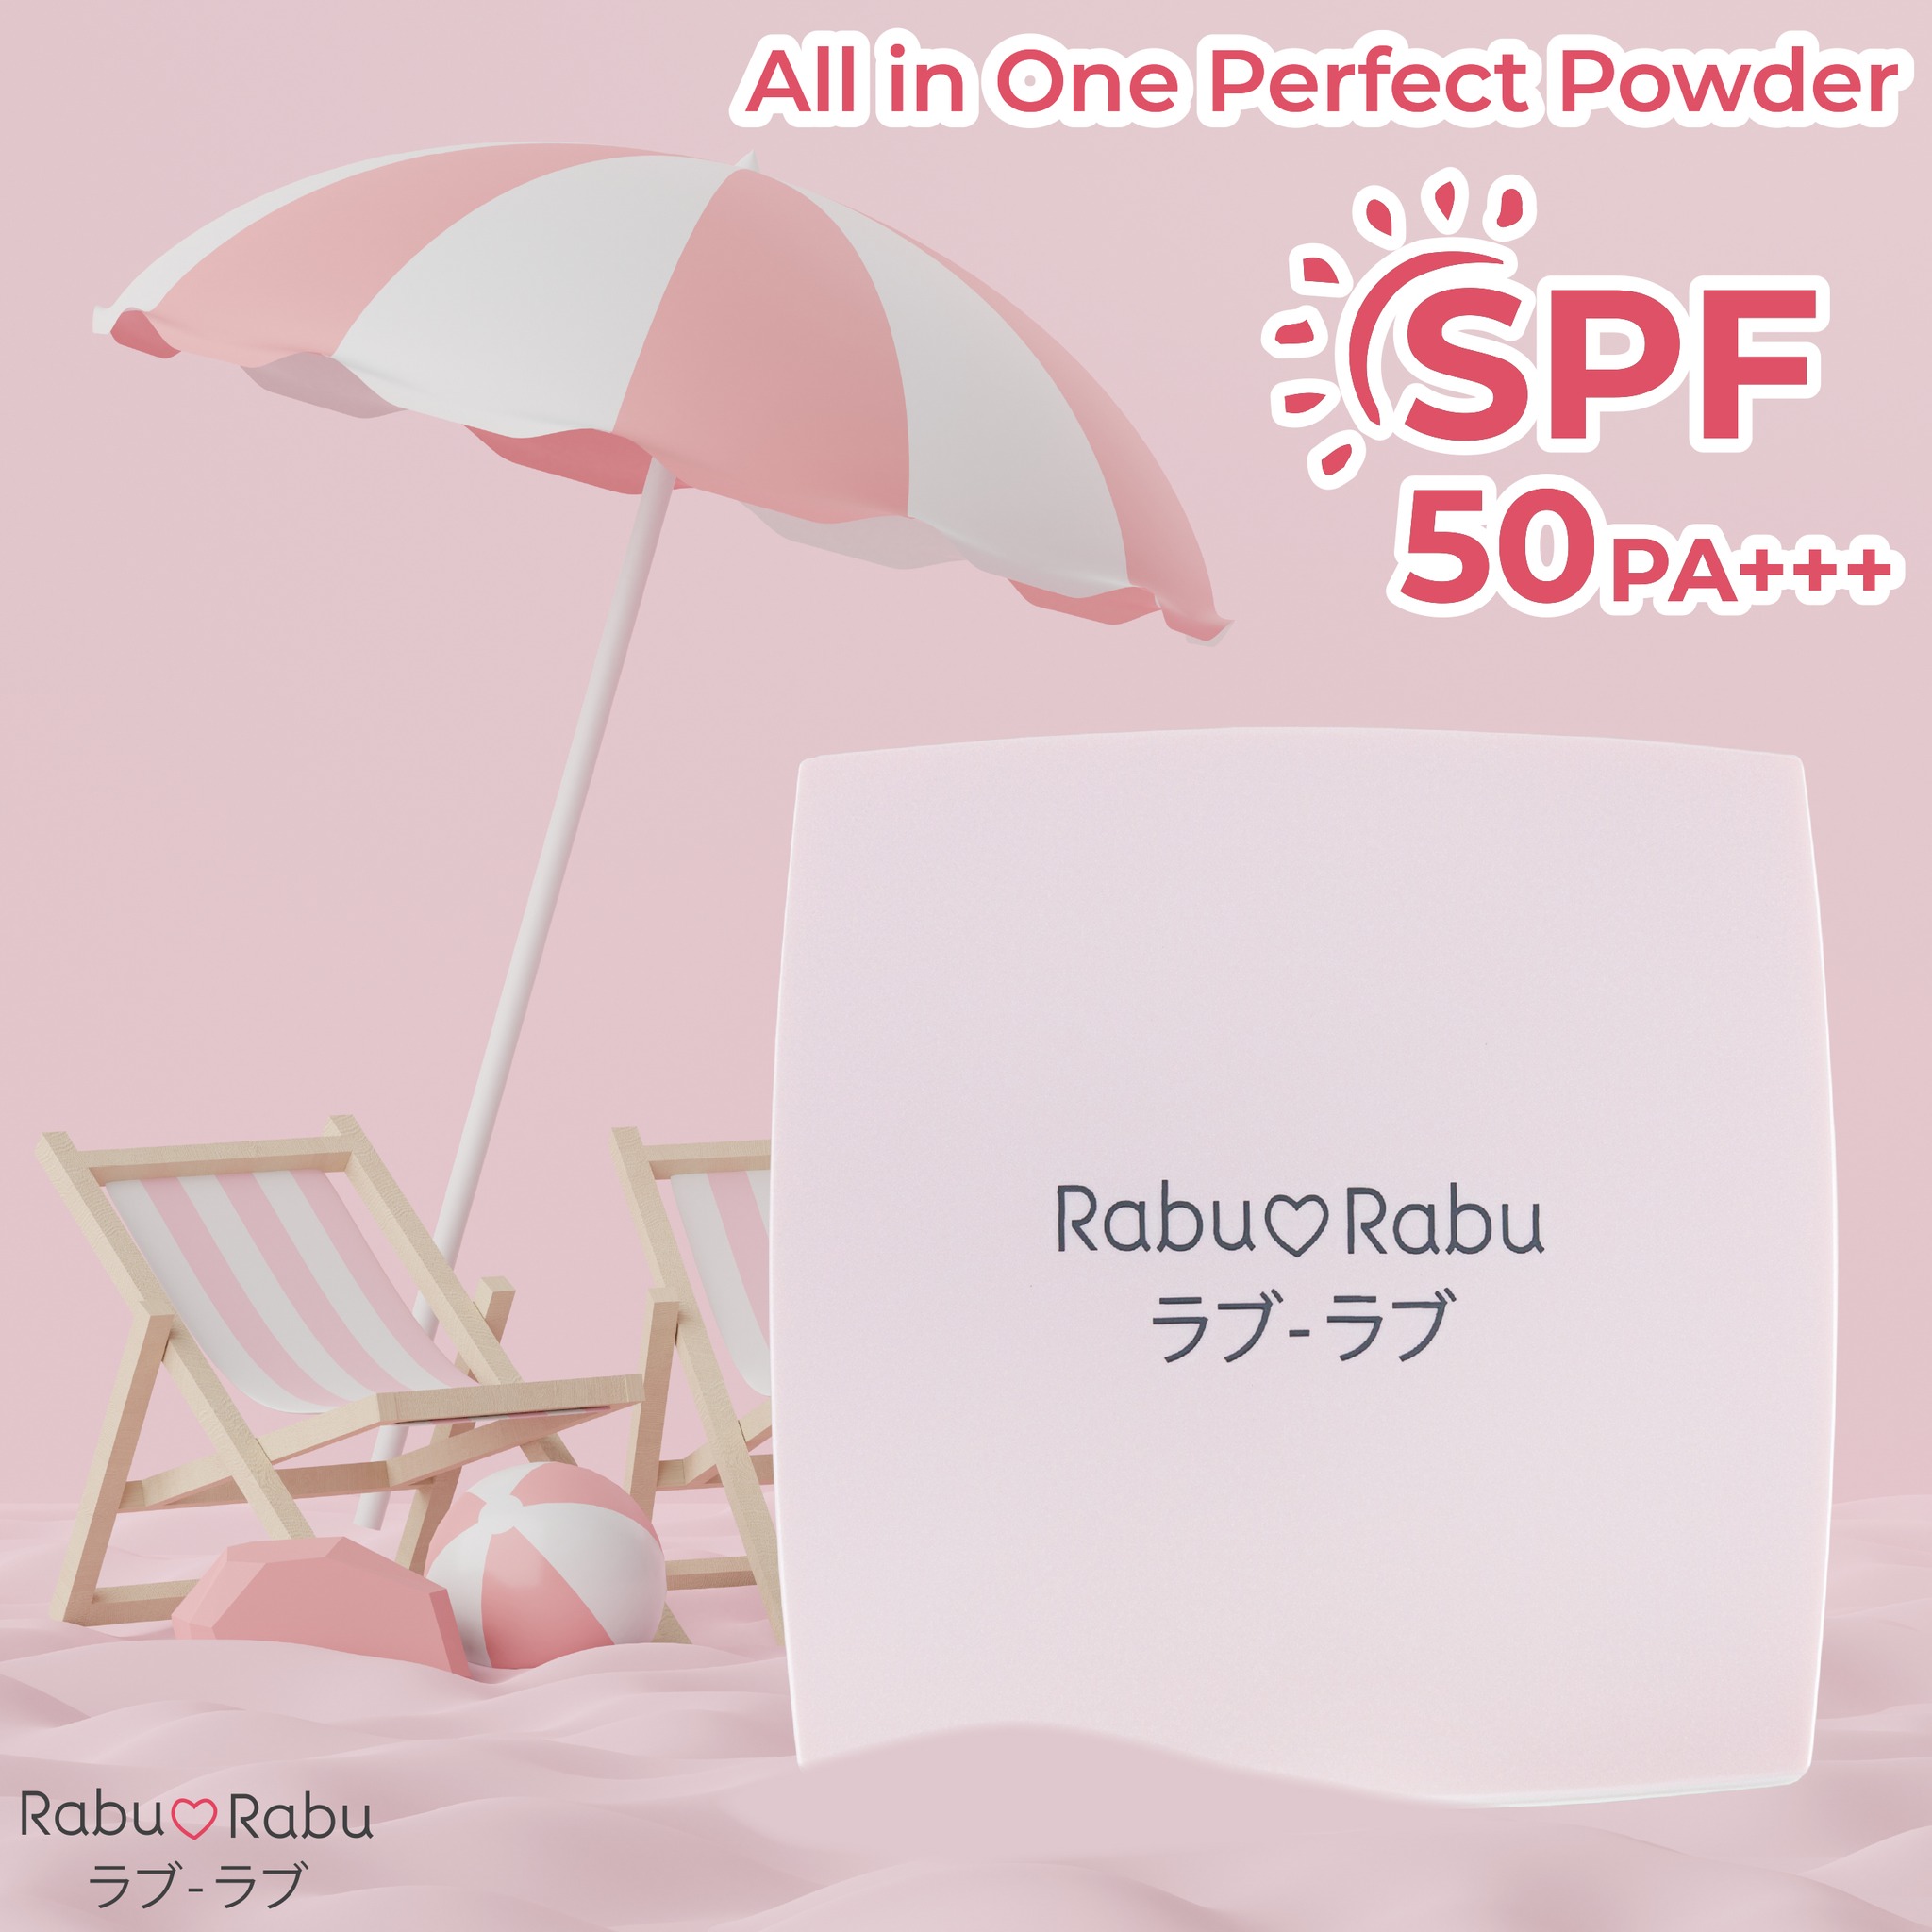 Rabu Rabu All in One Perfect Powder 